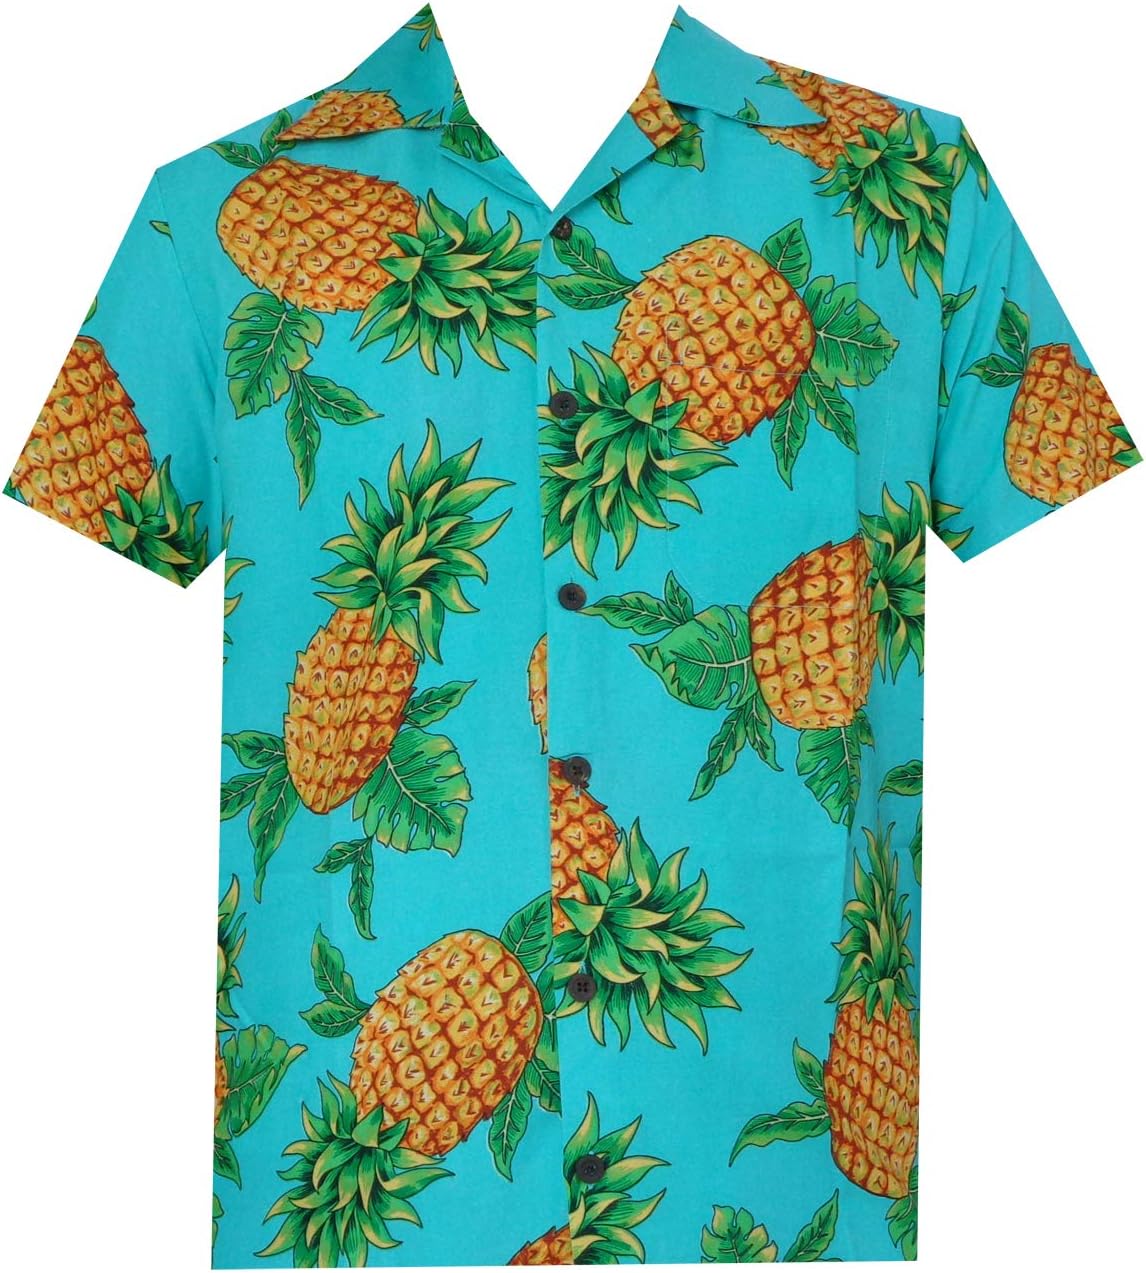 ALVISH Hawaiian Shirts for Mens Pineapple Aloha Beach Party Holiday Casual Short Sleeve